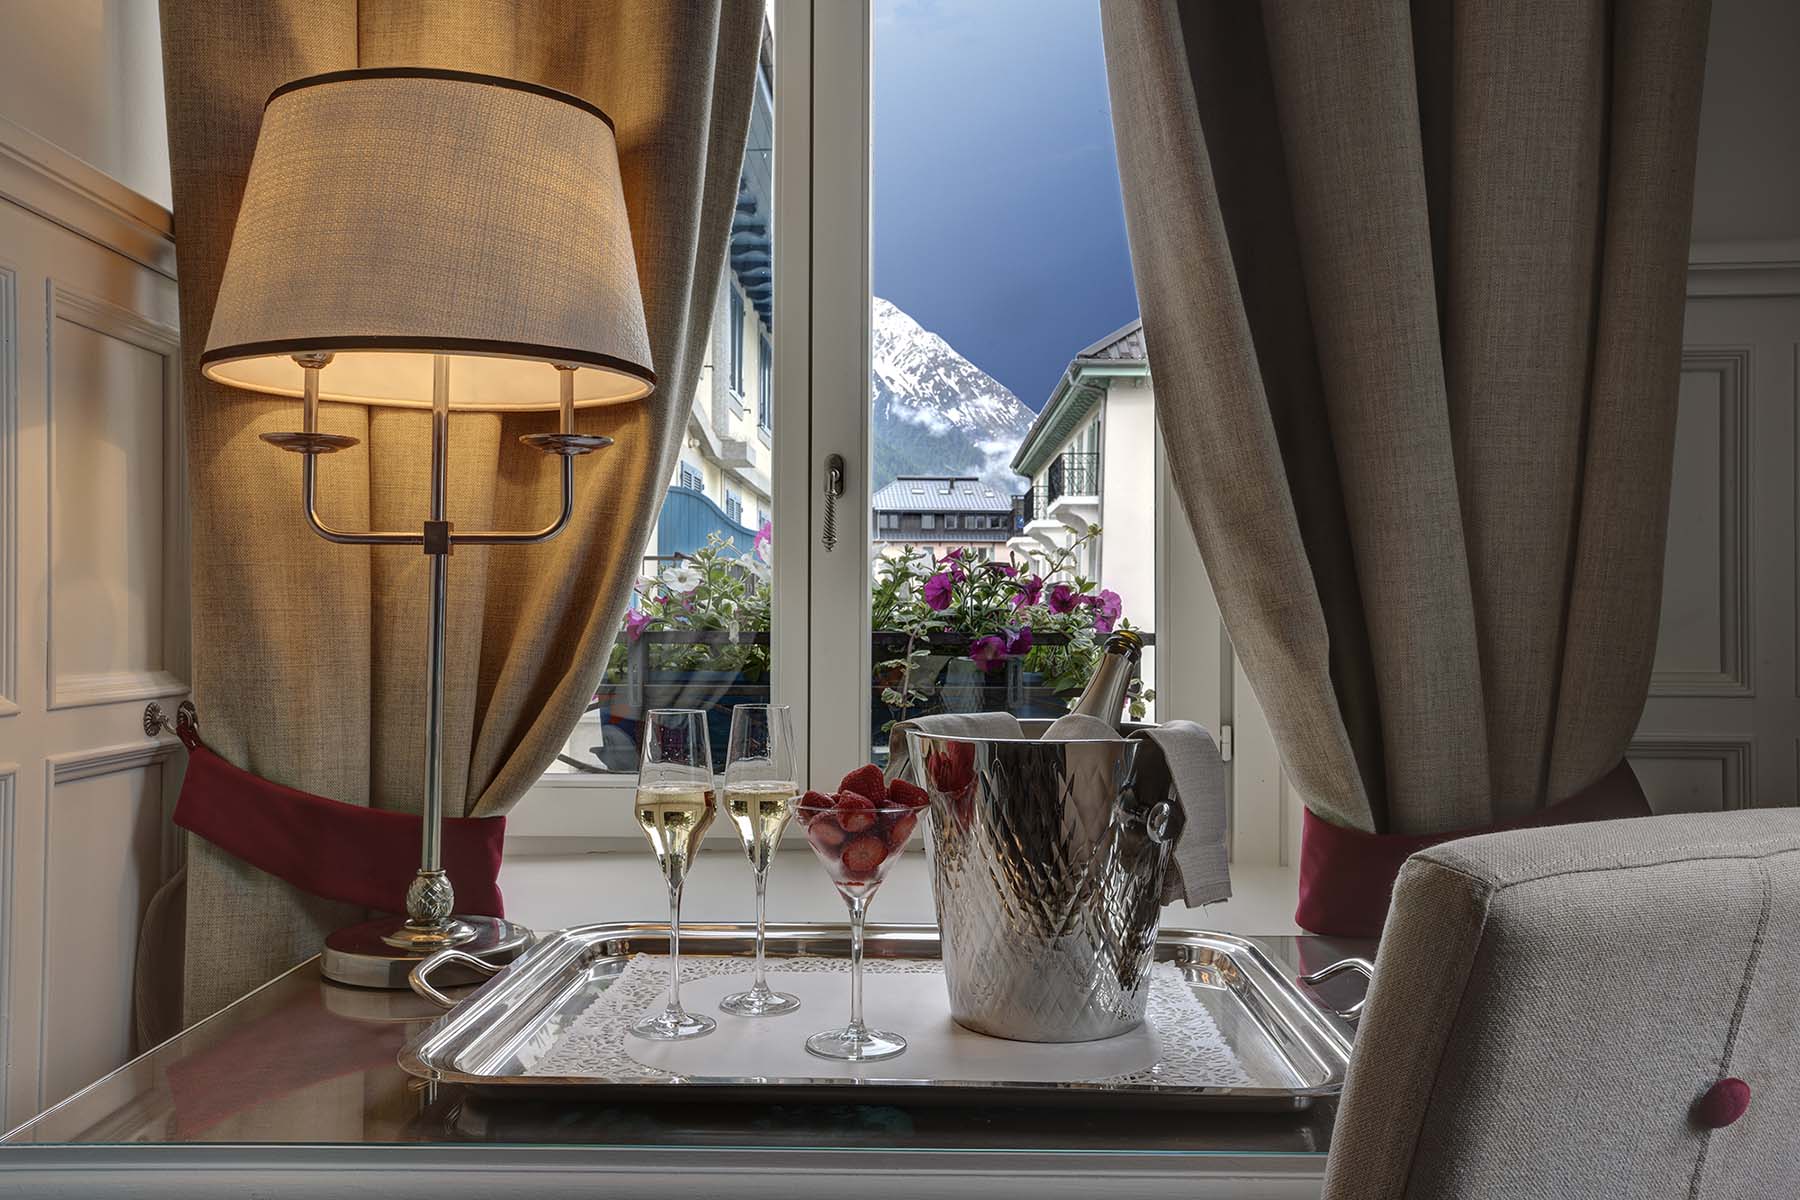 Alpe hotell i Chamonix